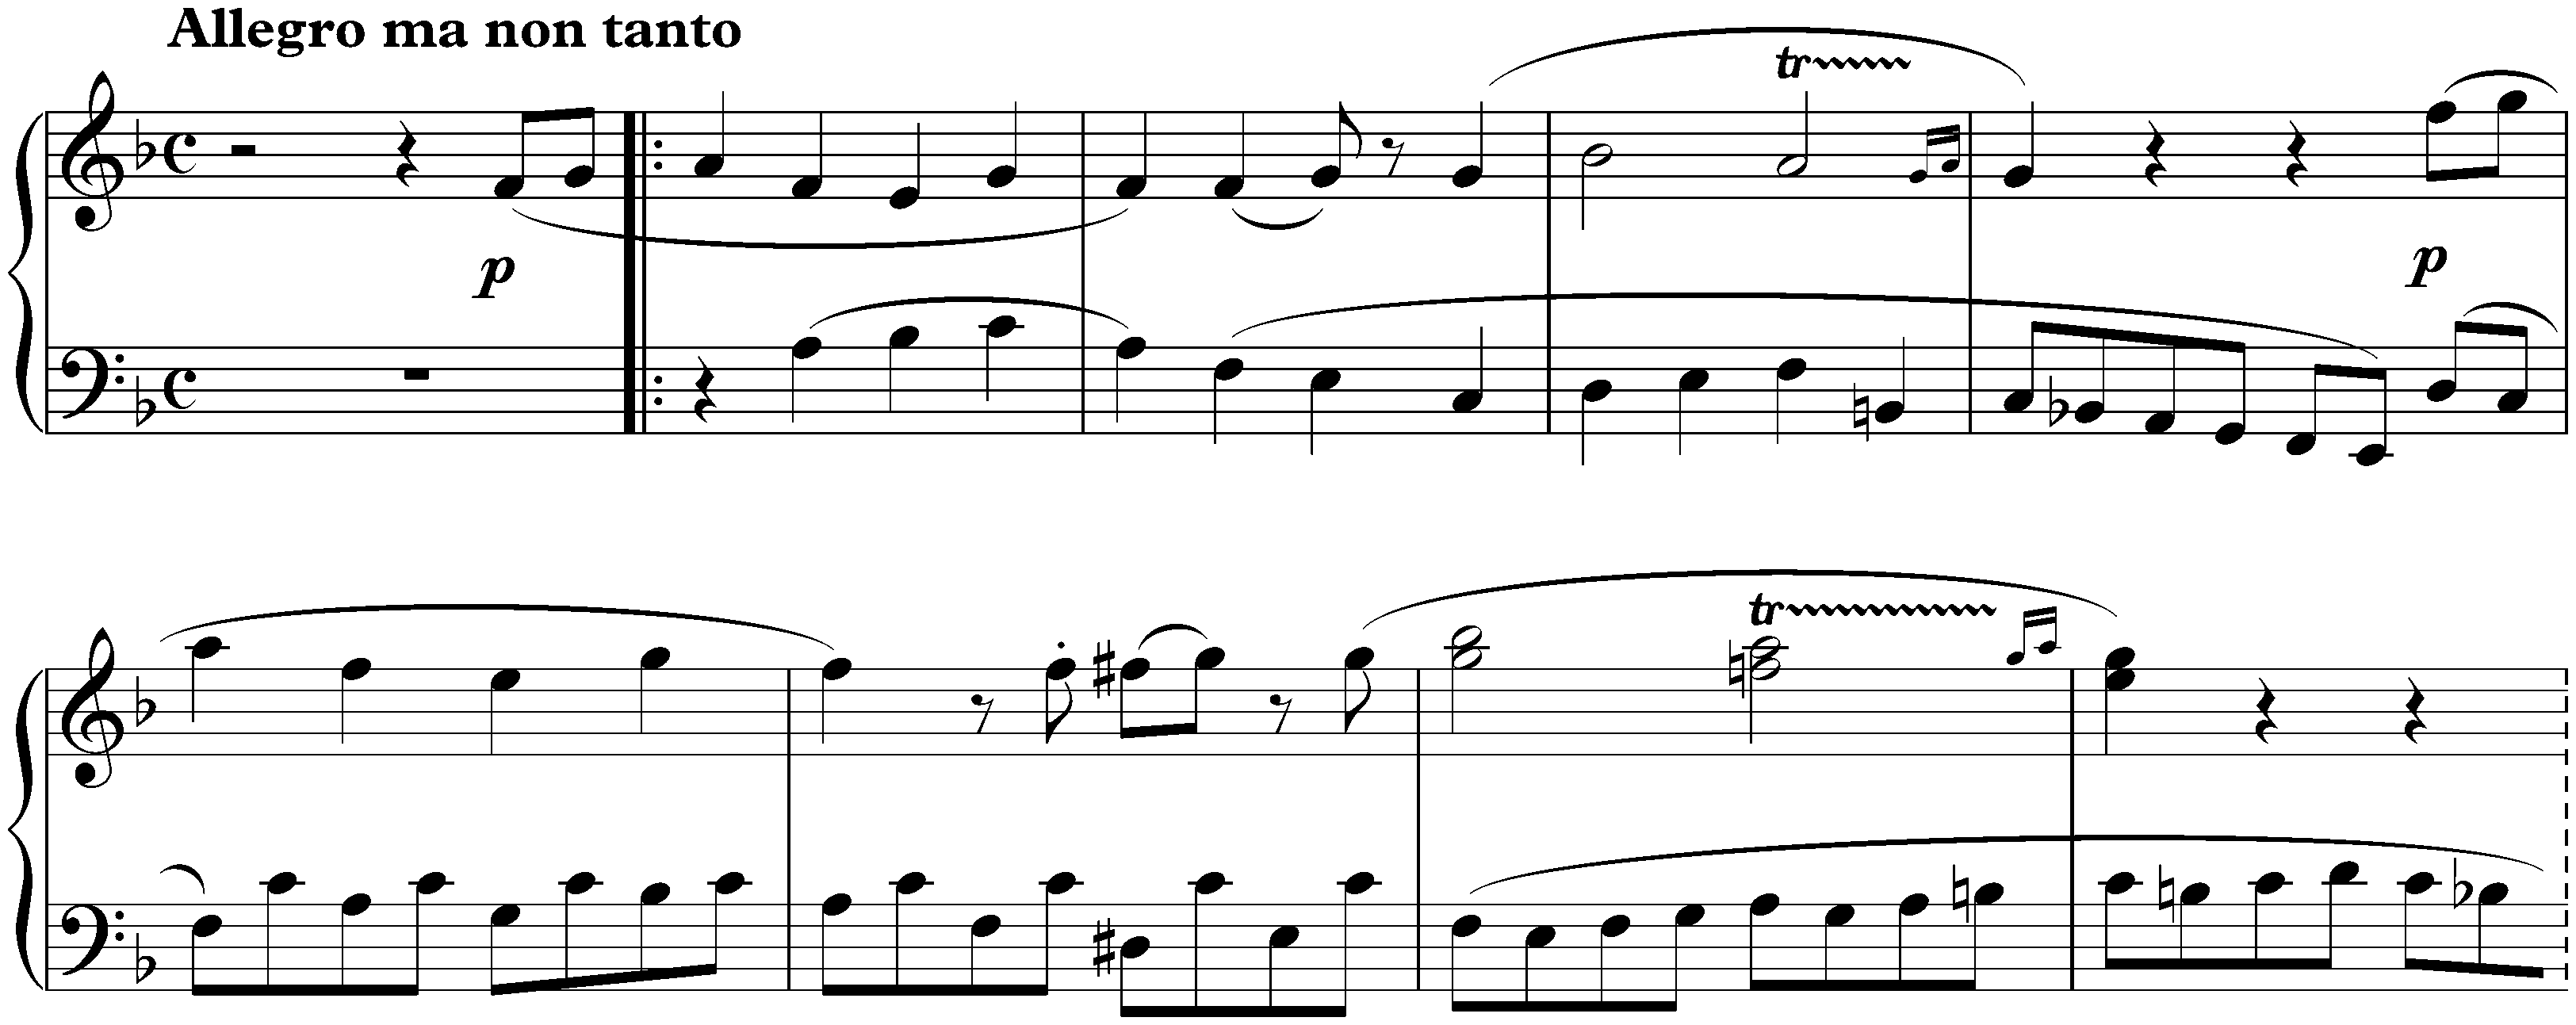 Sonata in F major; 1. Allegro ma non troppo